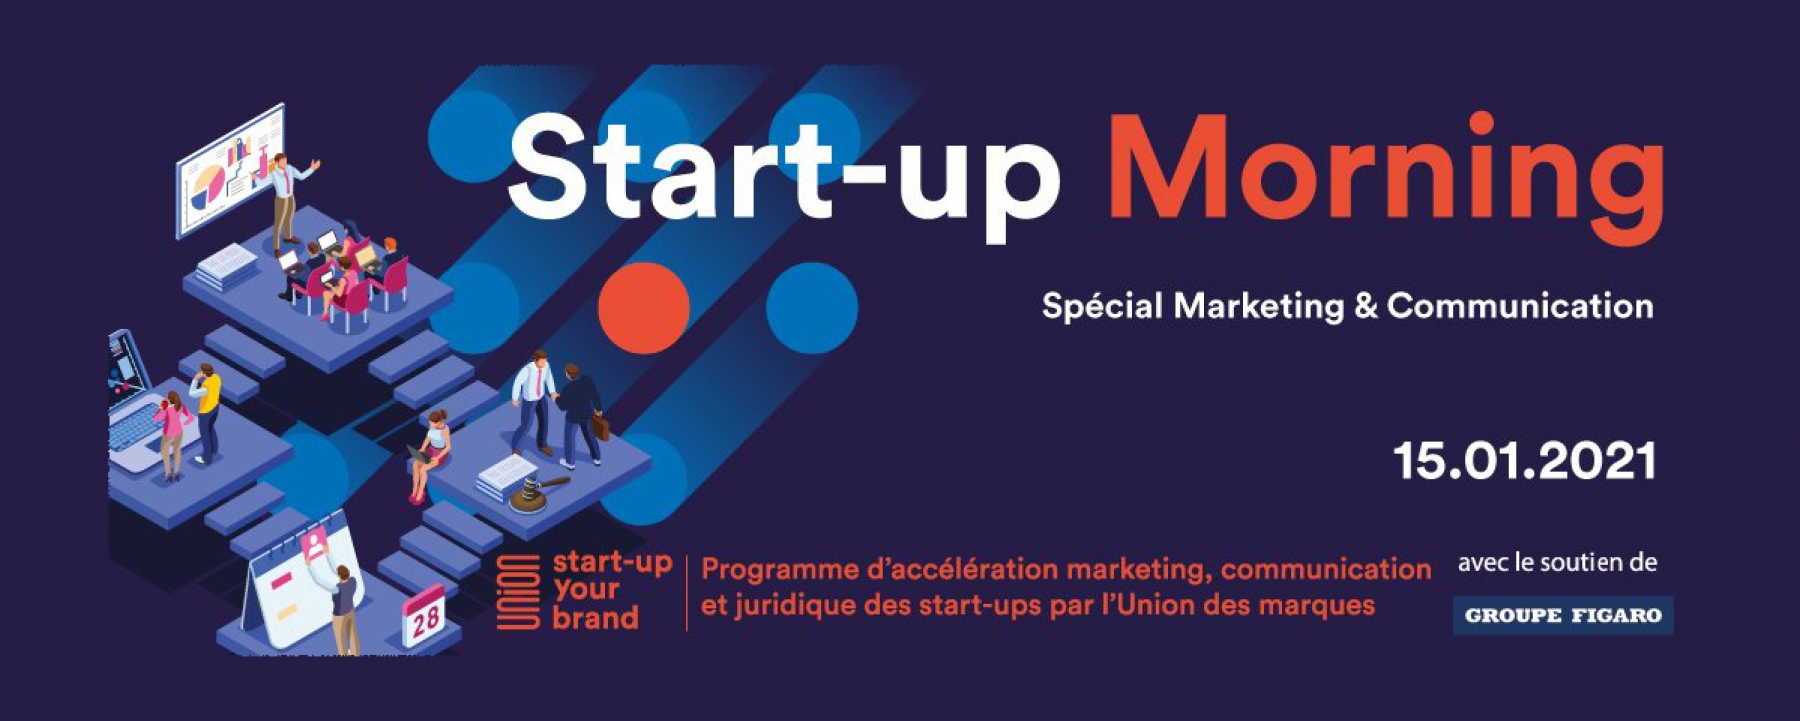 Start-up morning, un événement organisé par l'Union des marques le 15 janvier